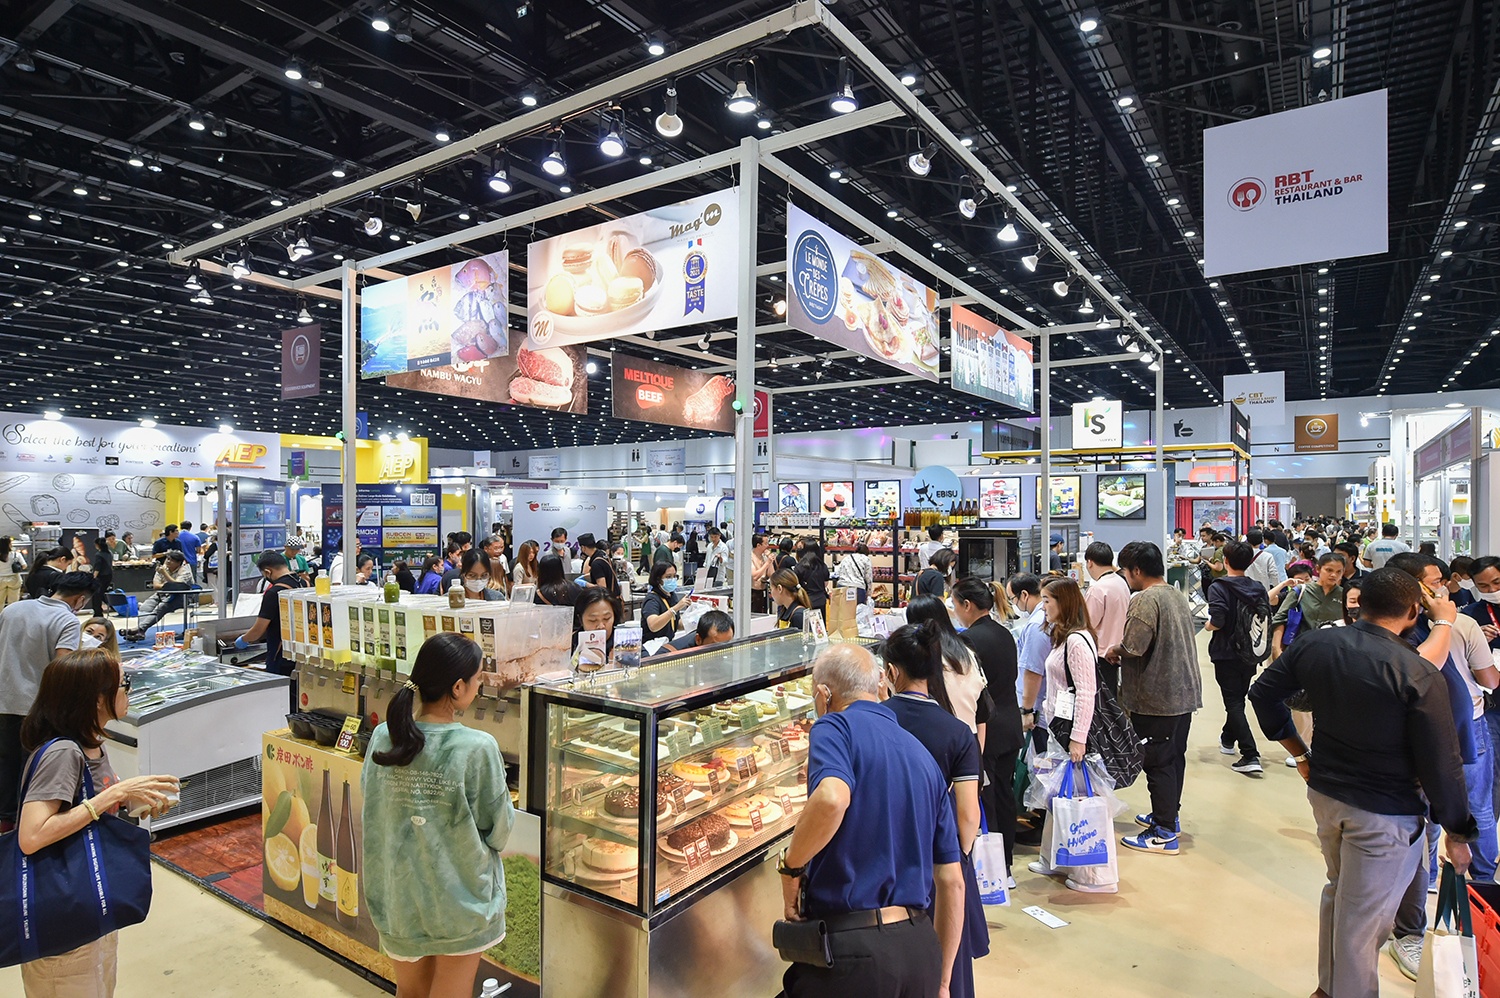 ธุรกิจอาหาร หวังกระแส Soft Power อาหารไทย - Mascot Marketing  จุดพลุดึงนักท่องเที่ยว เผยแนวโน้มธุรกิจ ชวนผู้ประกอบการเตรียมรับไฮซีซั่นปลายปี